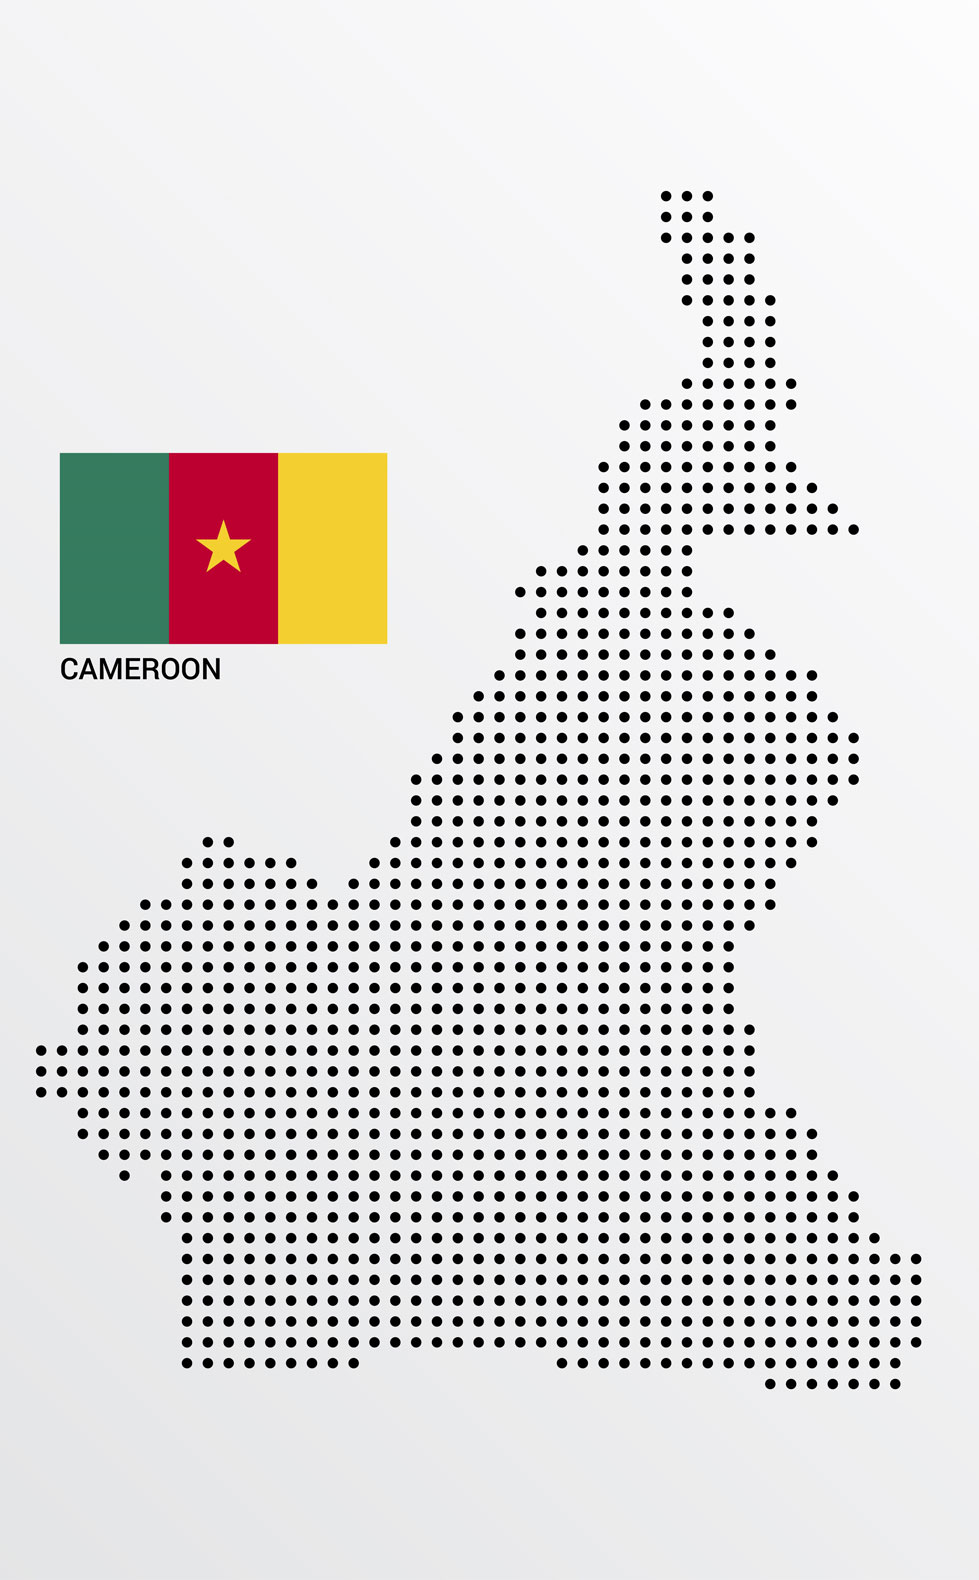 روش و راه ها و انواع ثبت شرکت در کامرون - Ways and types of company registration in Cameroon